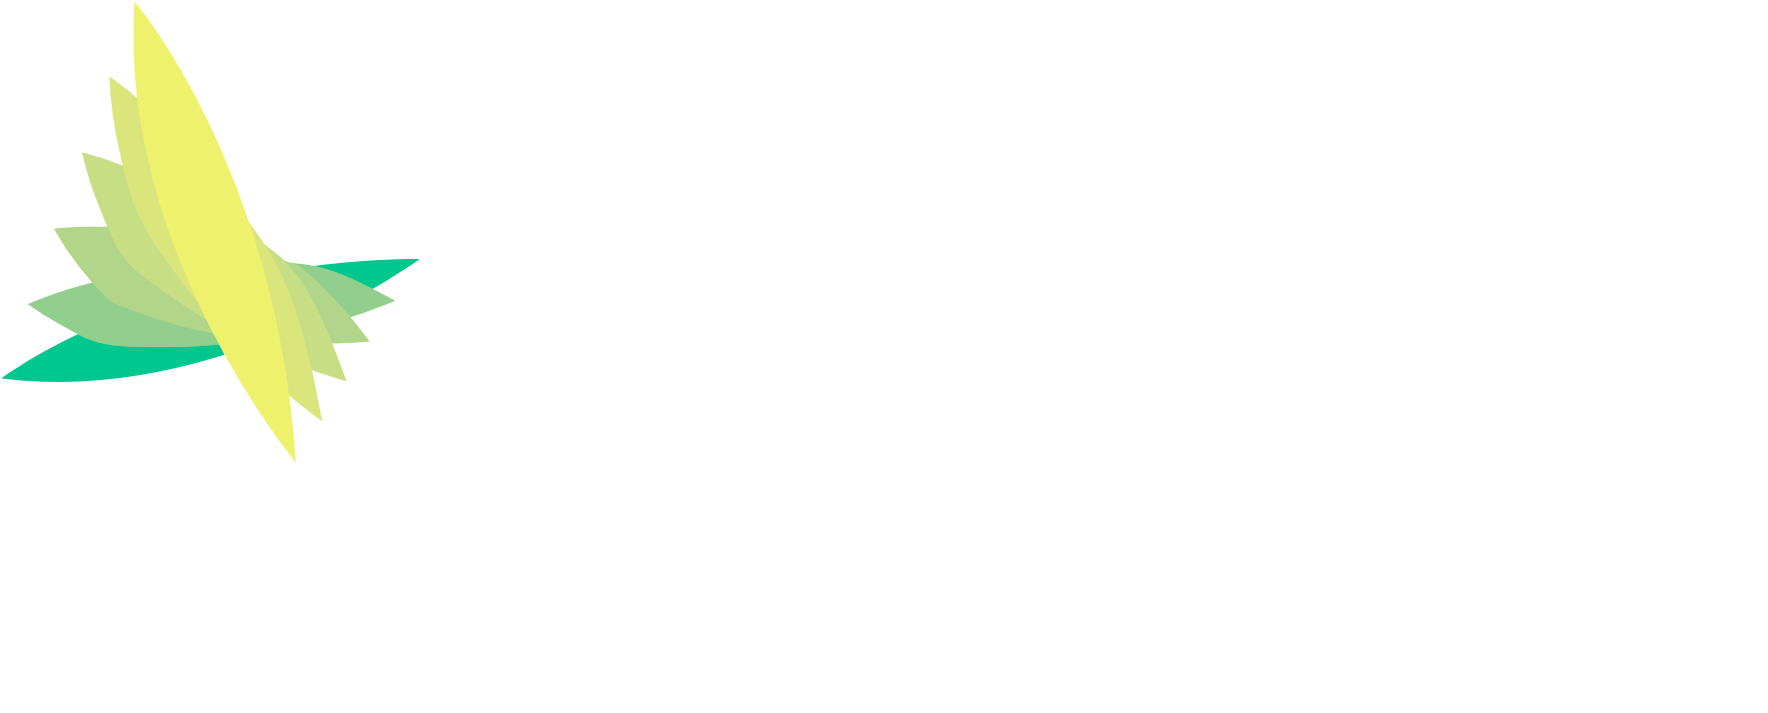 Syrge Inc. logo image